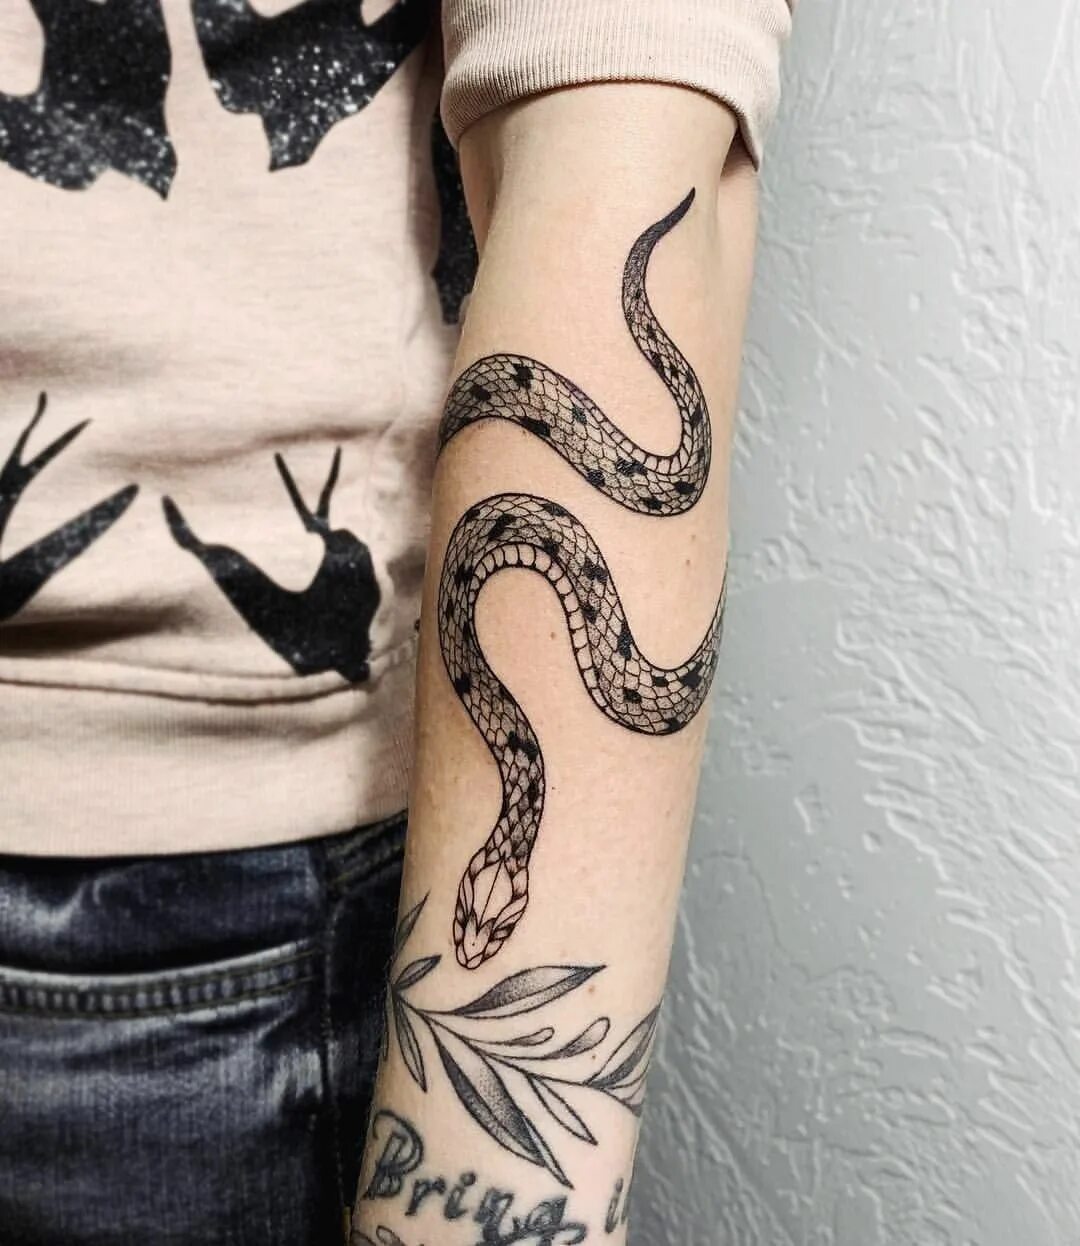 Тату змея обвивающая. Тату на руке женские змея обвивающая руку. Змея обвивает руку тату. Тату змея вокруг руки. Тату змея обвиваюшию руку.